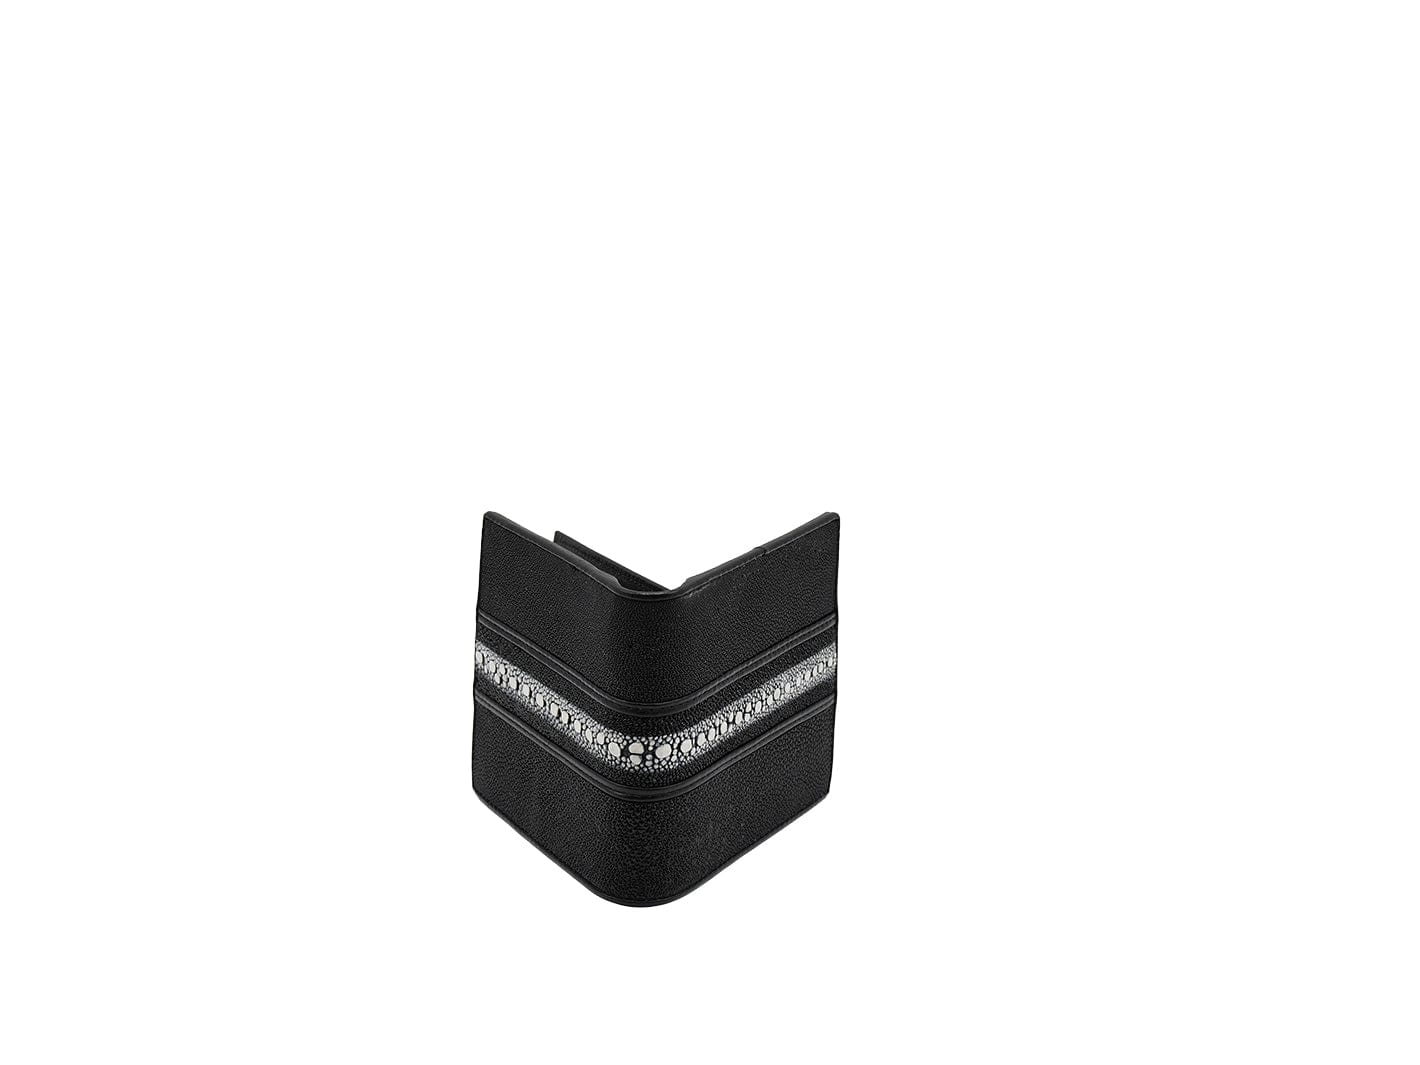 Black & White Pearl Stingray Bi-fold Leather Wallet